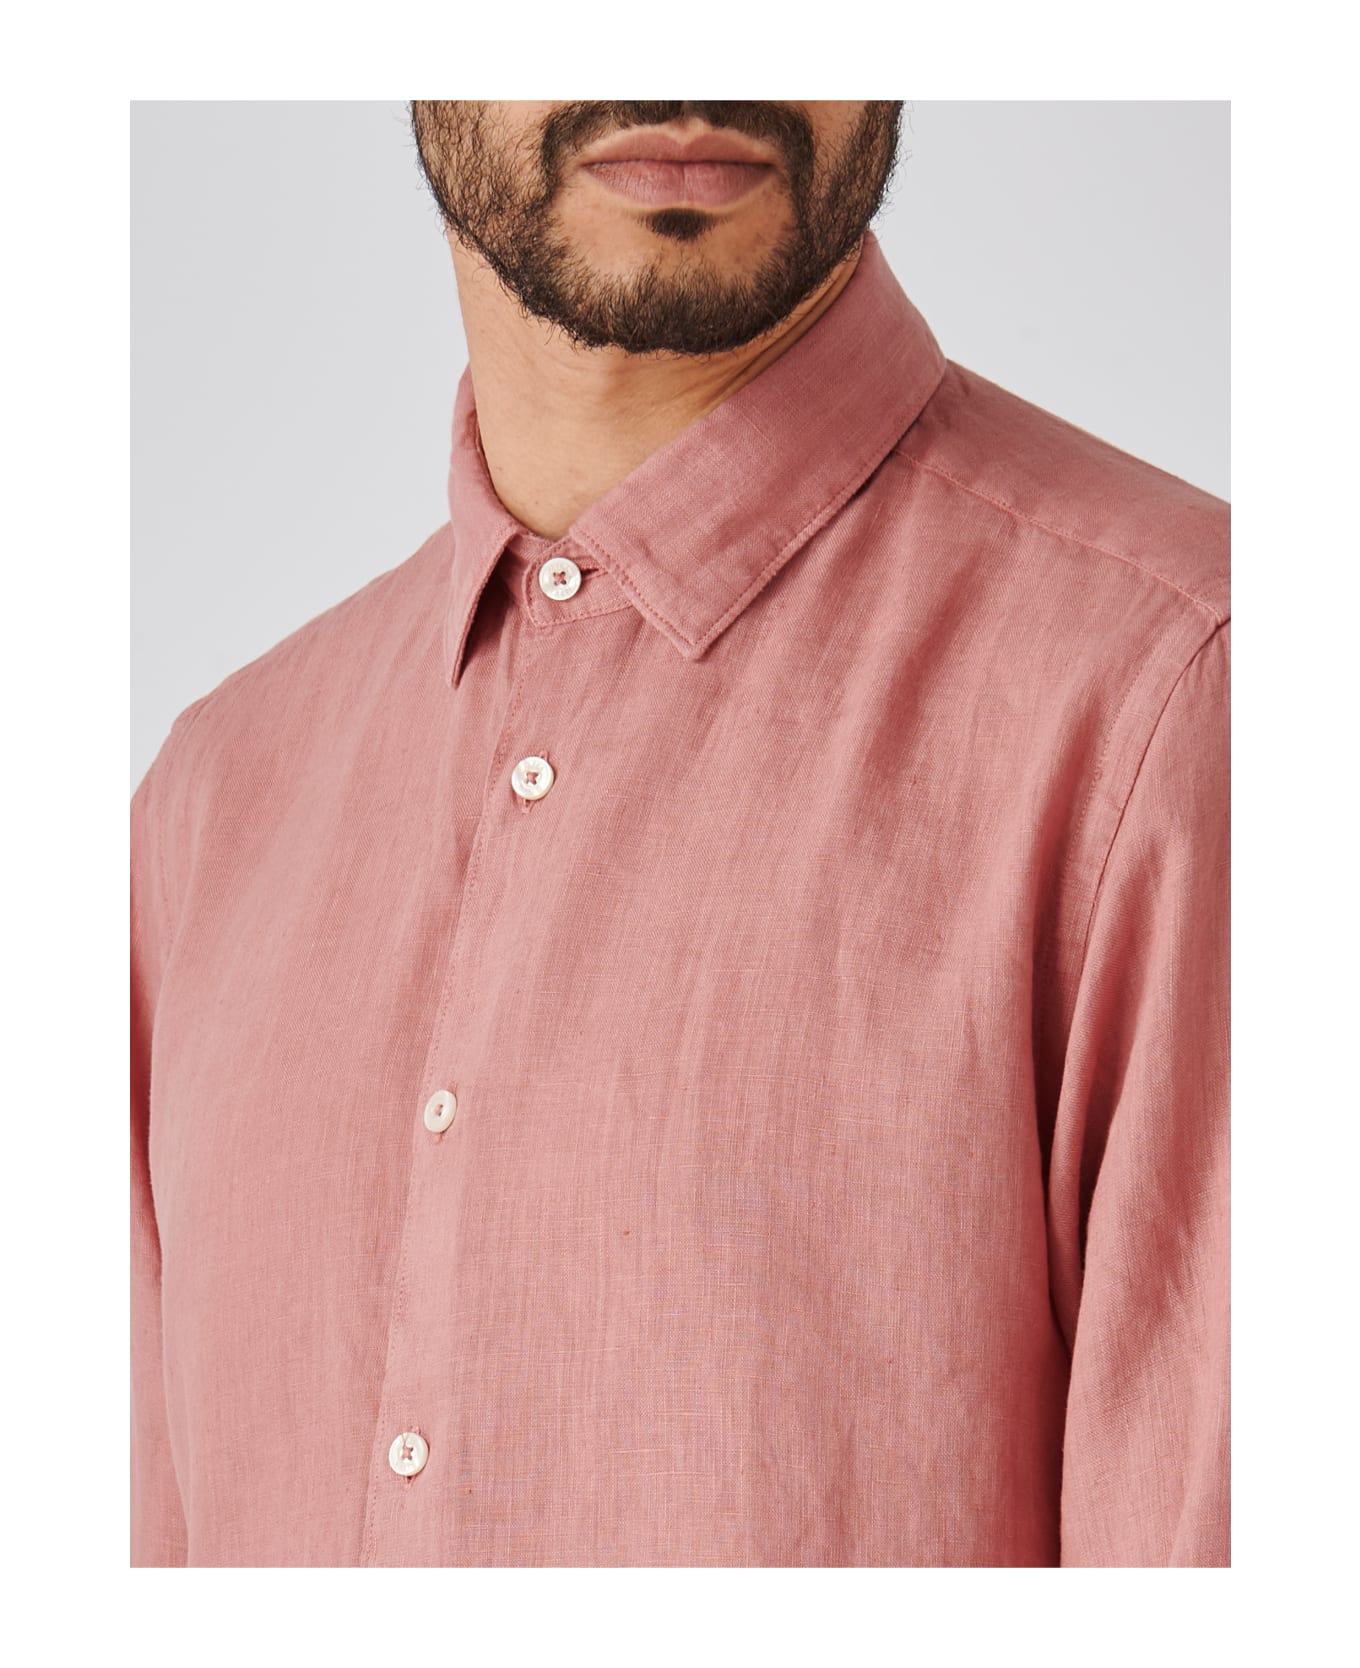 Altea Camicia Uomo Shirt - ROSA ANTICO